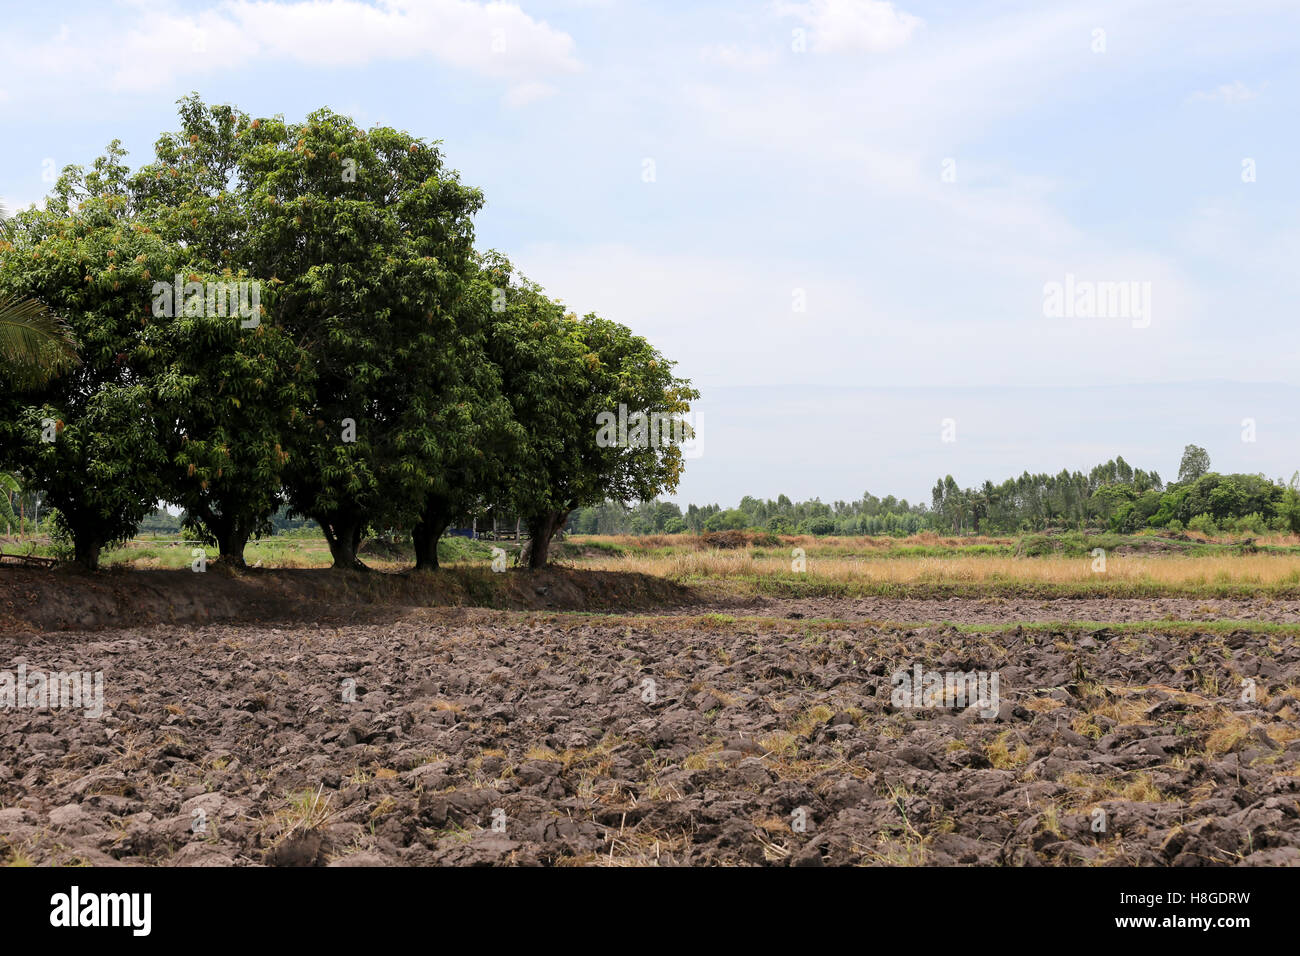 Les terres agricoles dans les zones rurales et après le labour pour plant de riz. Banque D'Images